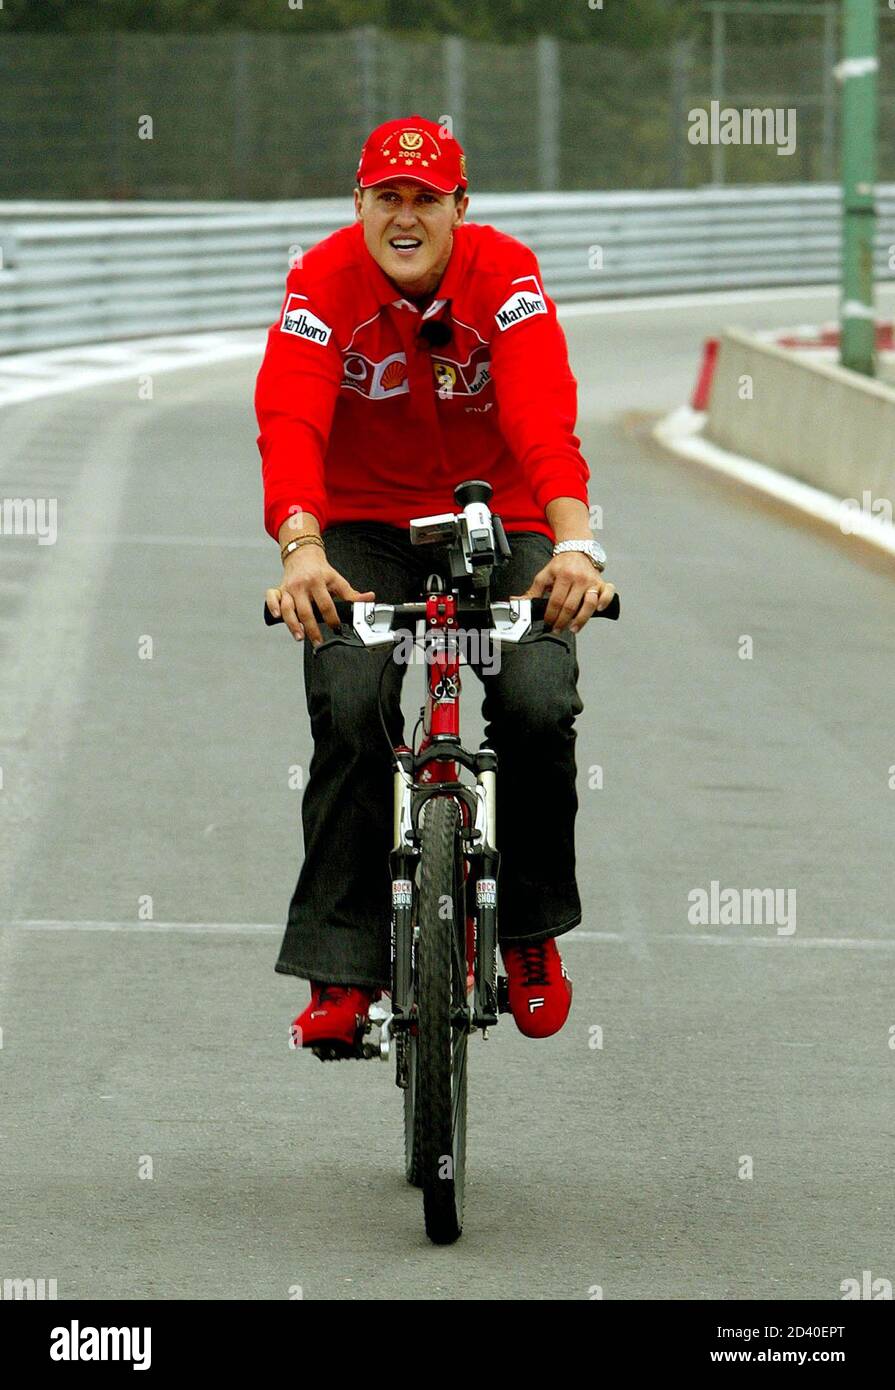 Der deutsche Ferrari-Pilot und Weltmeister Michael Schumacher fährt mit dem  Fahrrad, um die Strecke vor dem belgischen Formel 1 Grand Prix in Spa  Francorchamps am 29. August 2002 zu inspizieren. Das Rennen